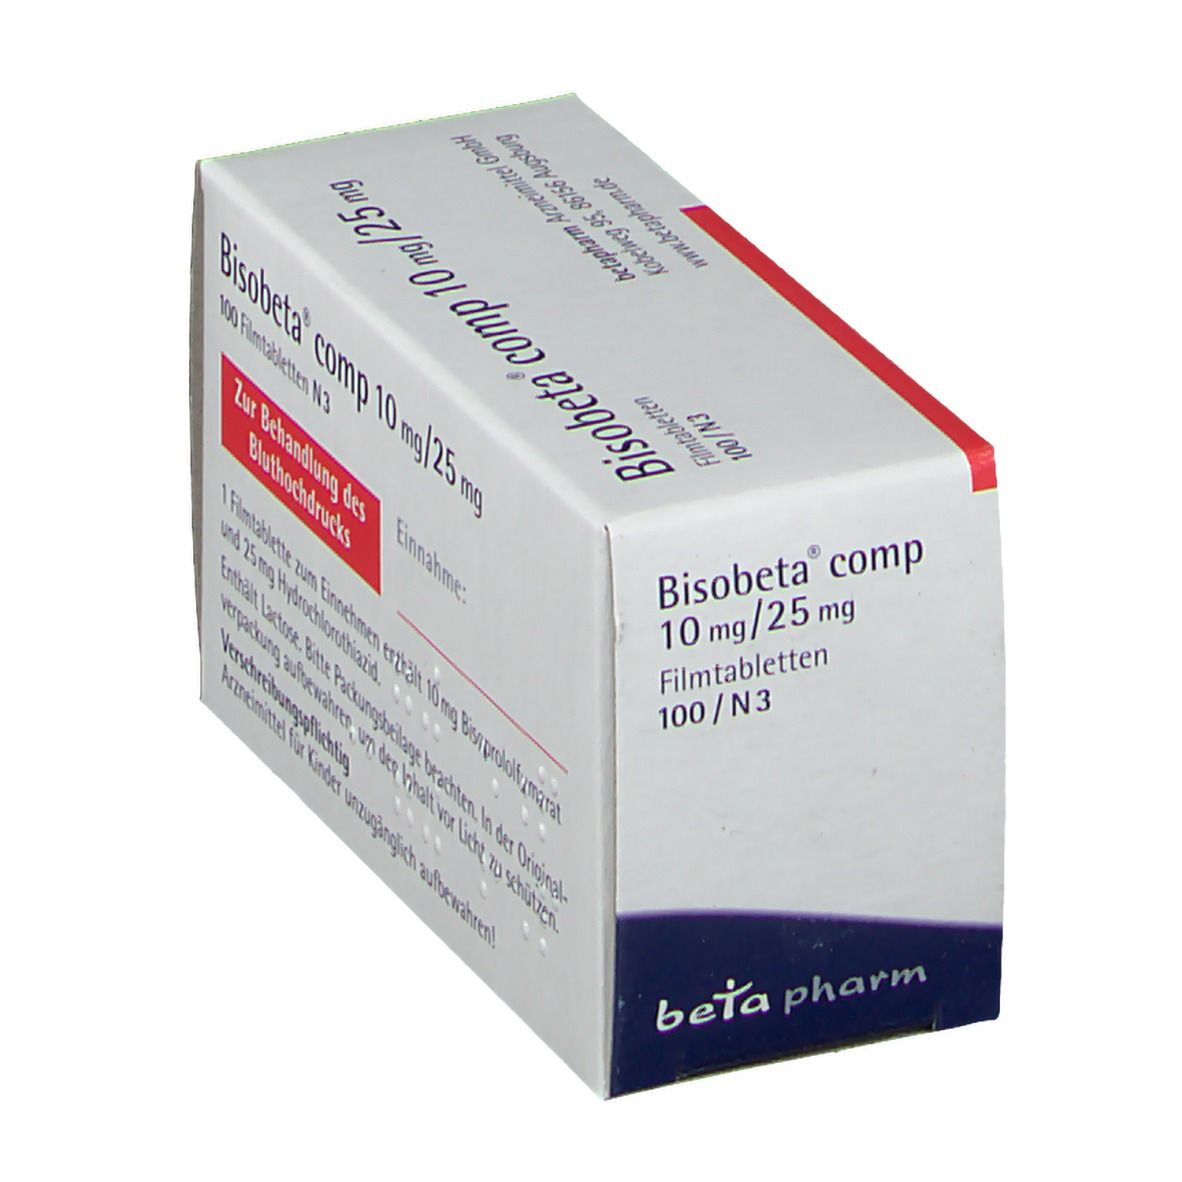 Bisobeta® comp 10 mg/25 mg